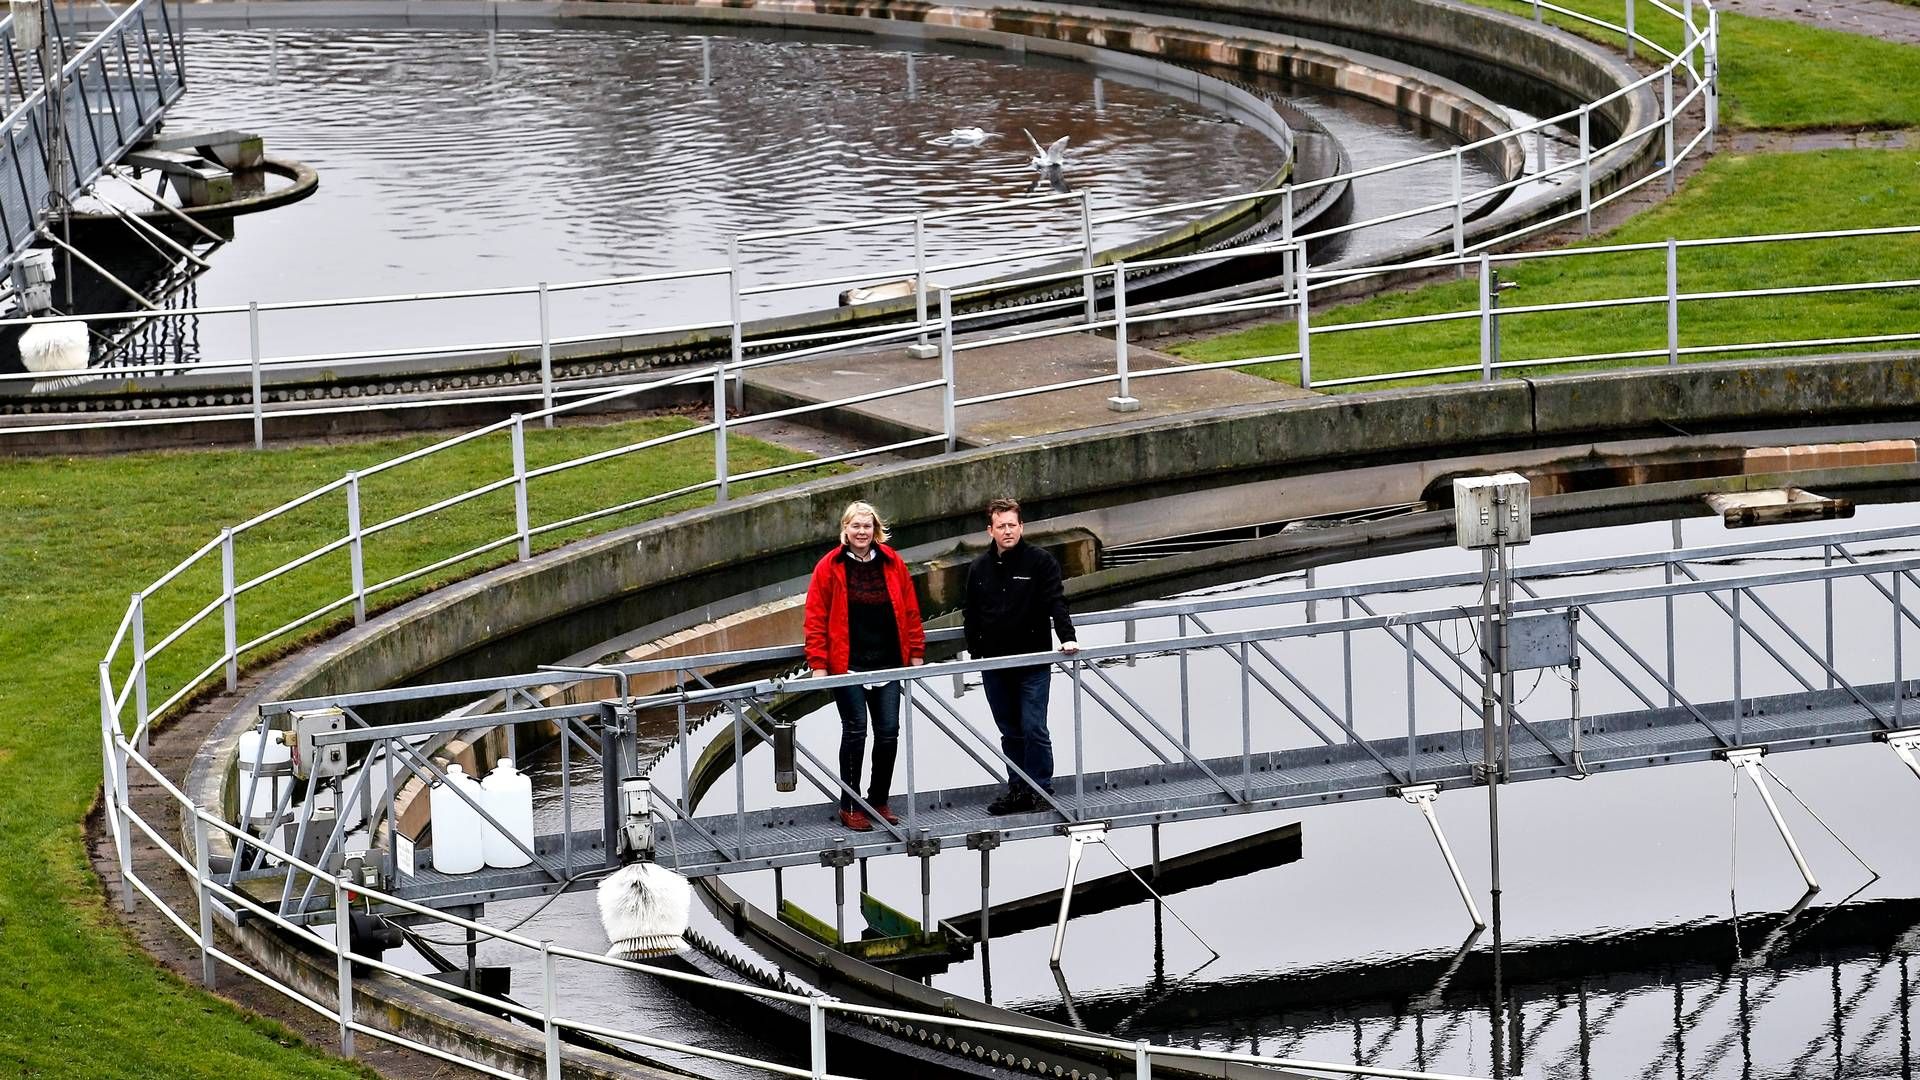 Viby Renseanlæg har kapacitet til at rense spildevand fra omkring 120.000 personer. | Foto: Ole Lind